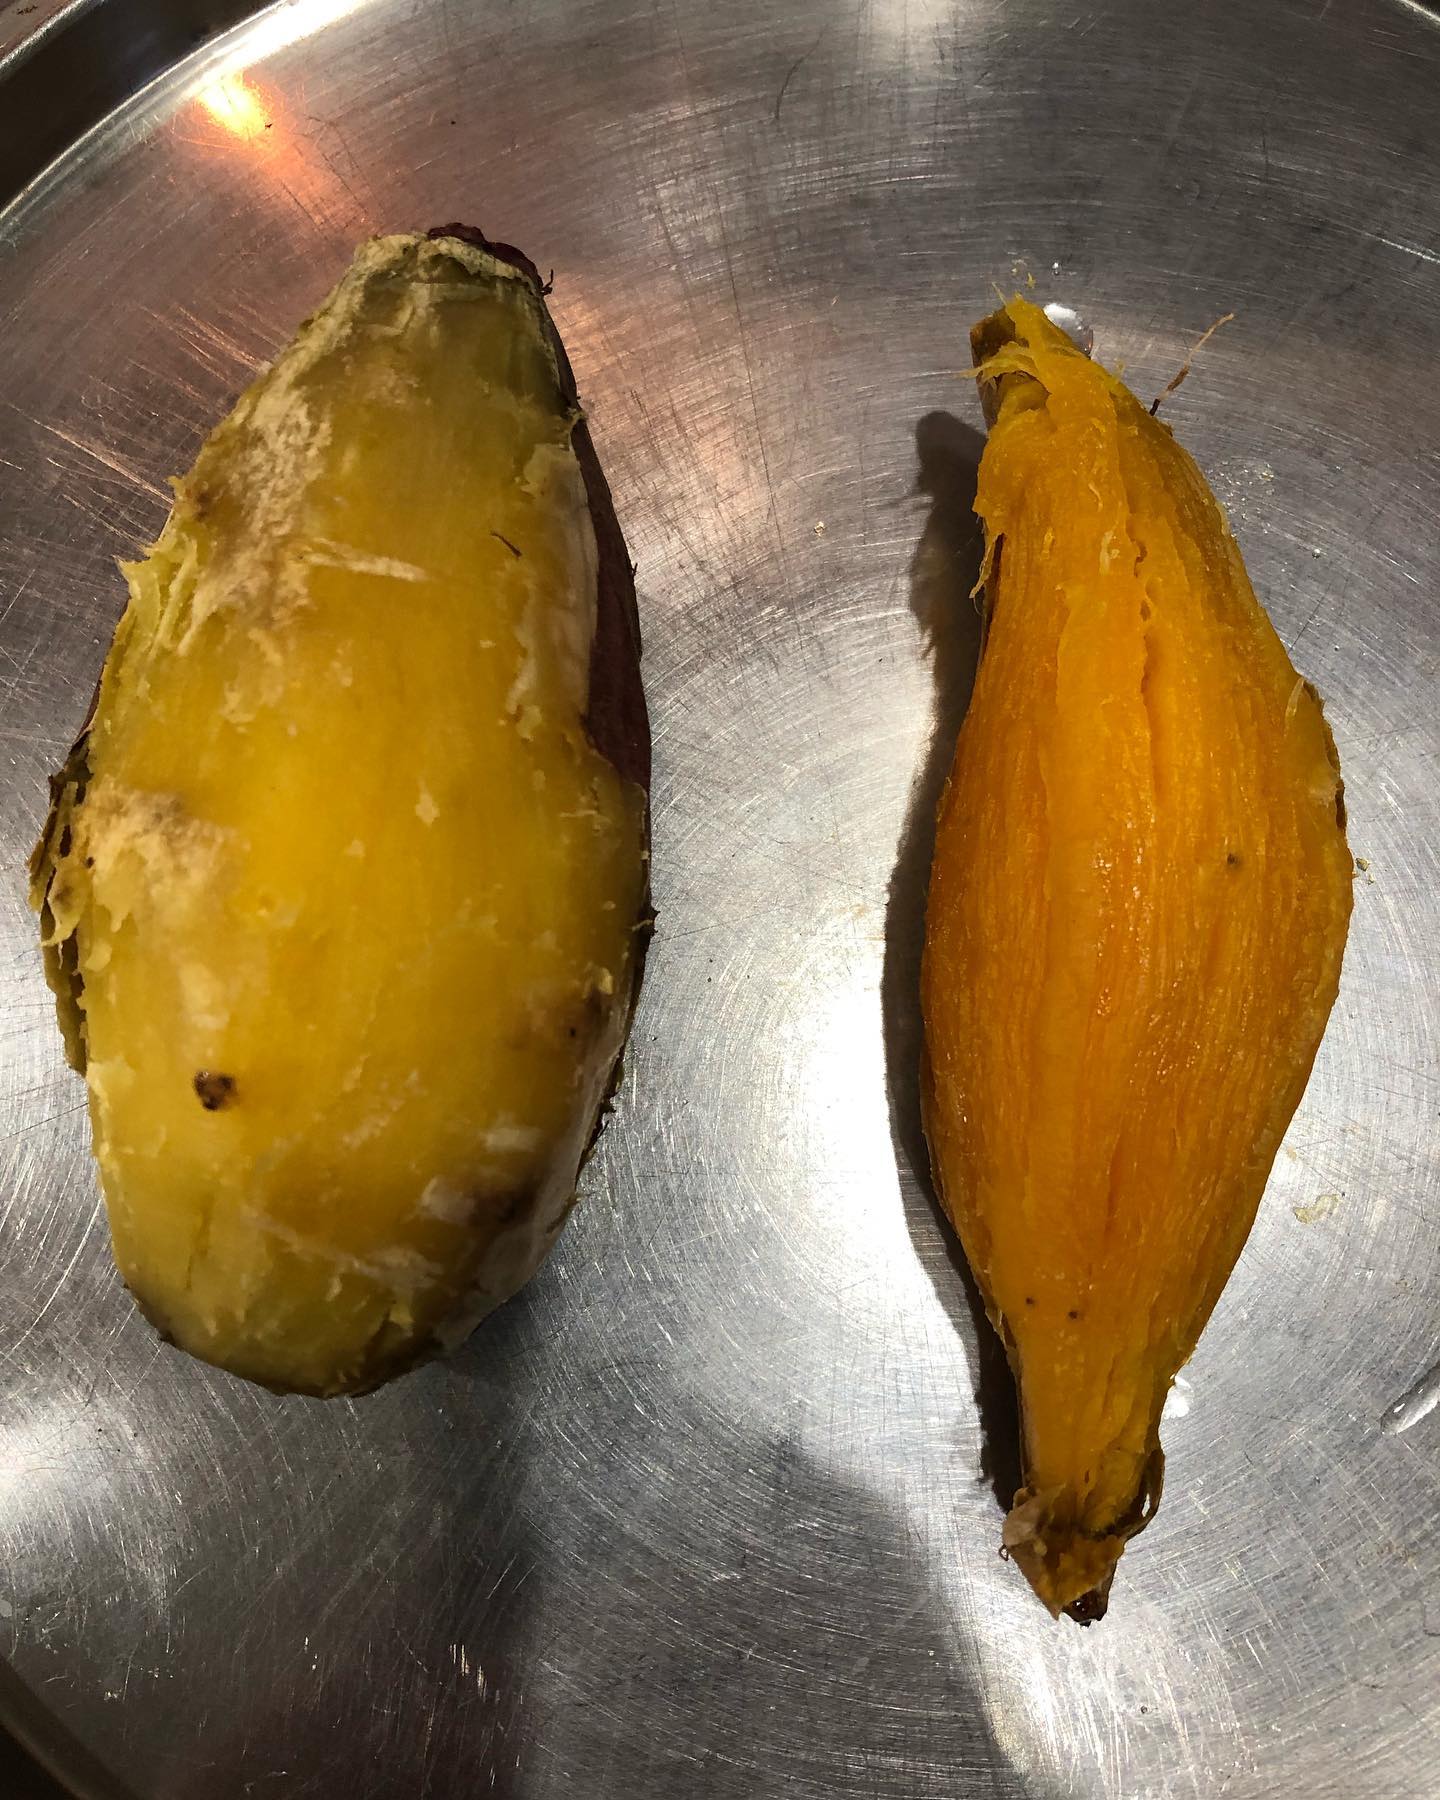 高田農園さんのべにはるかと
クリ芋をオーブンで焼いて見ました。どちらも甘いがクリ芋の甘さがすごいです。何を作ろうか